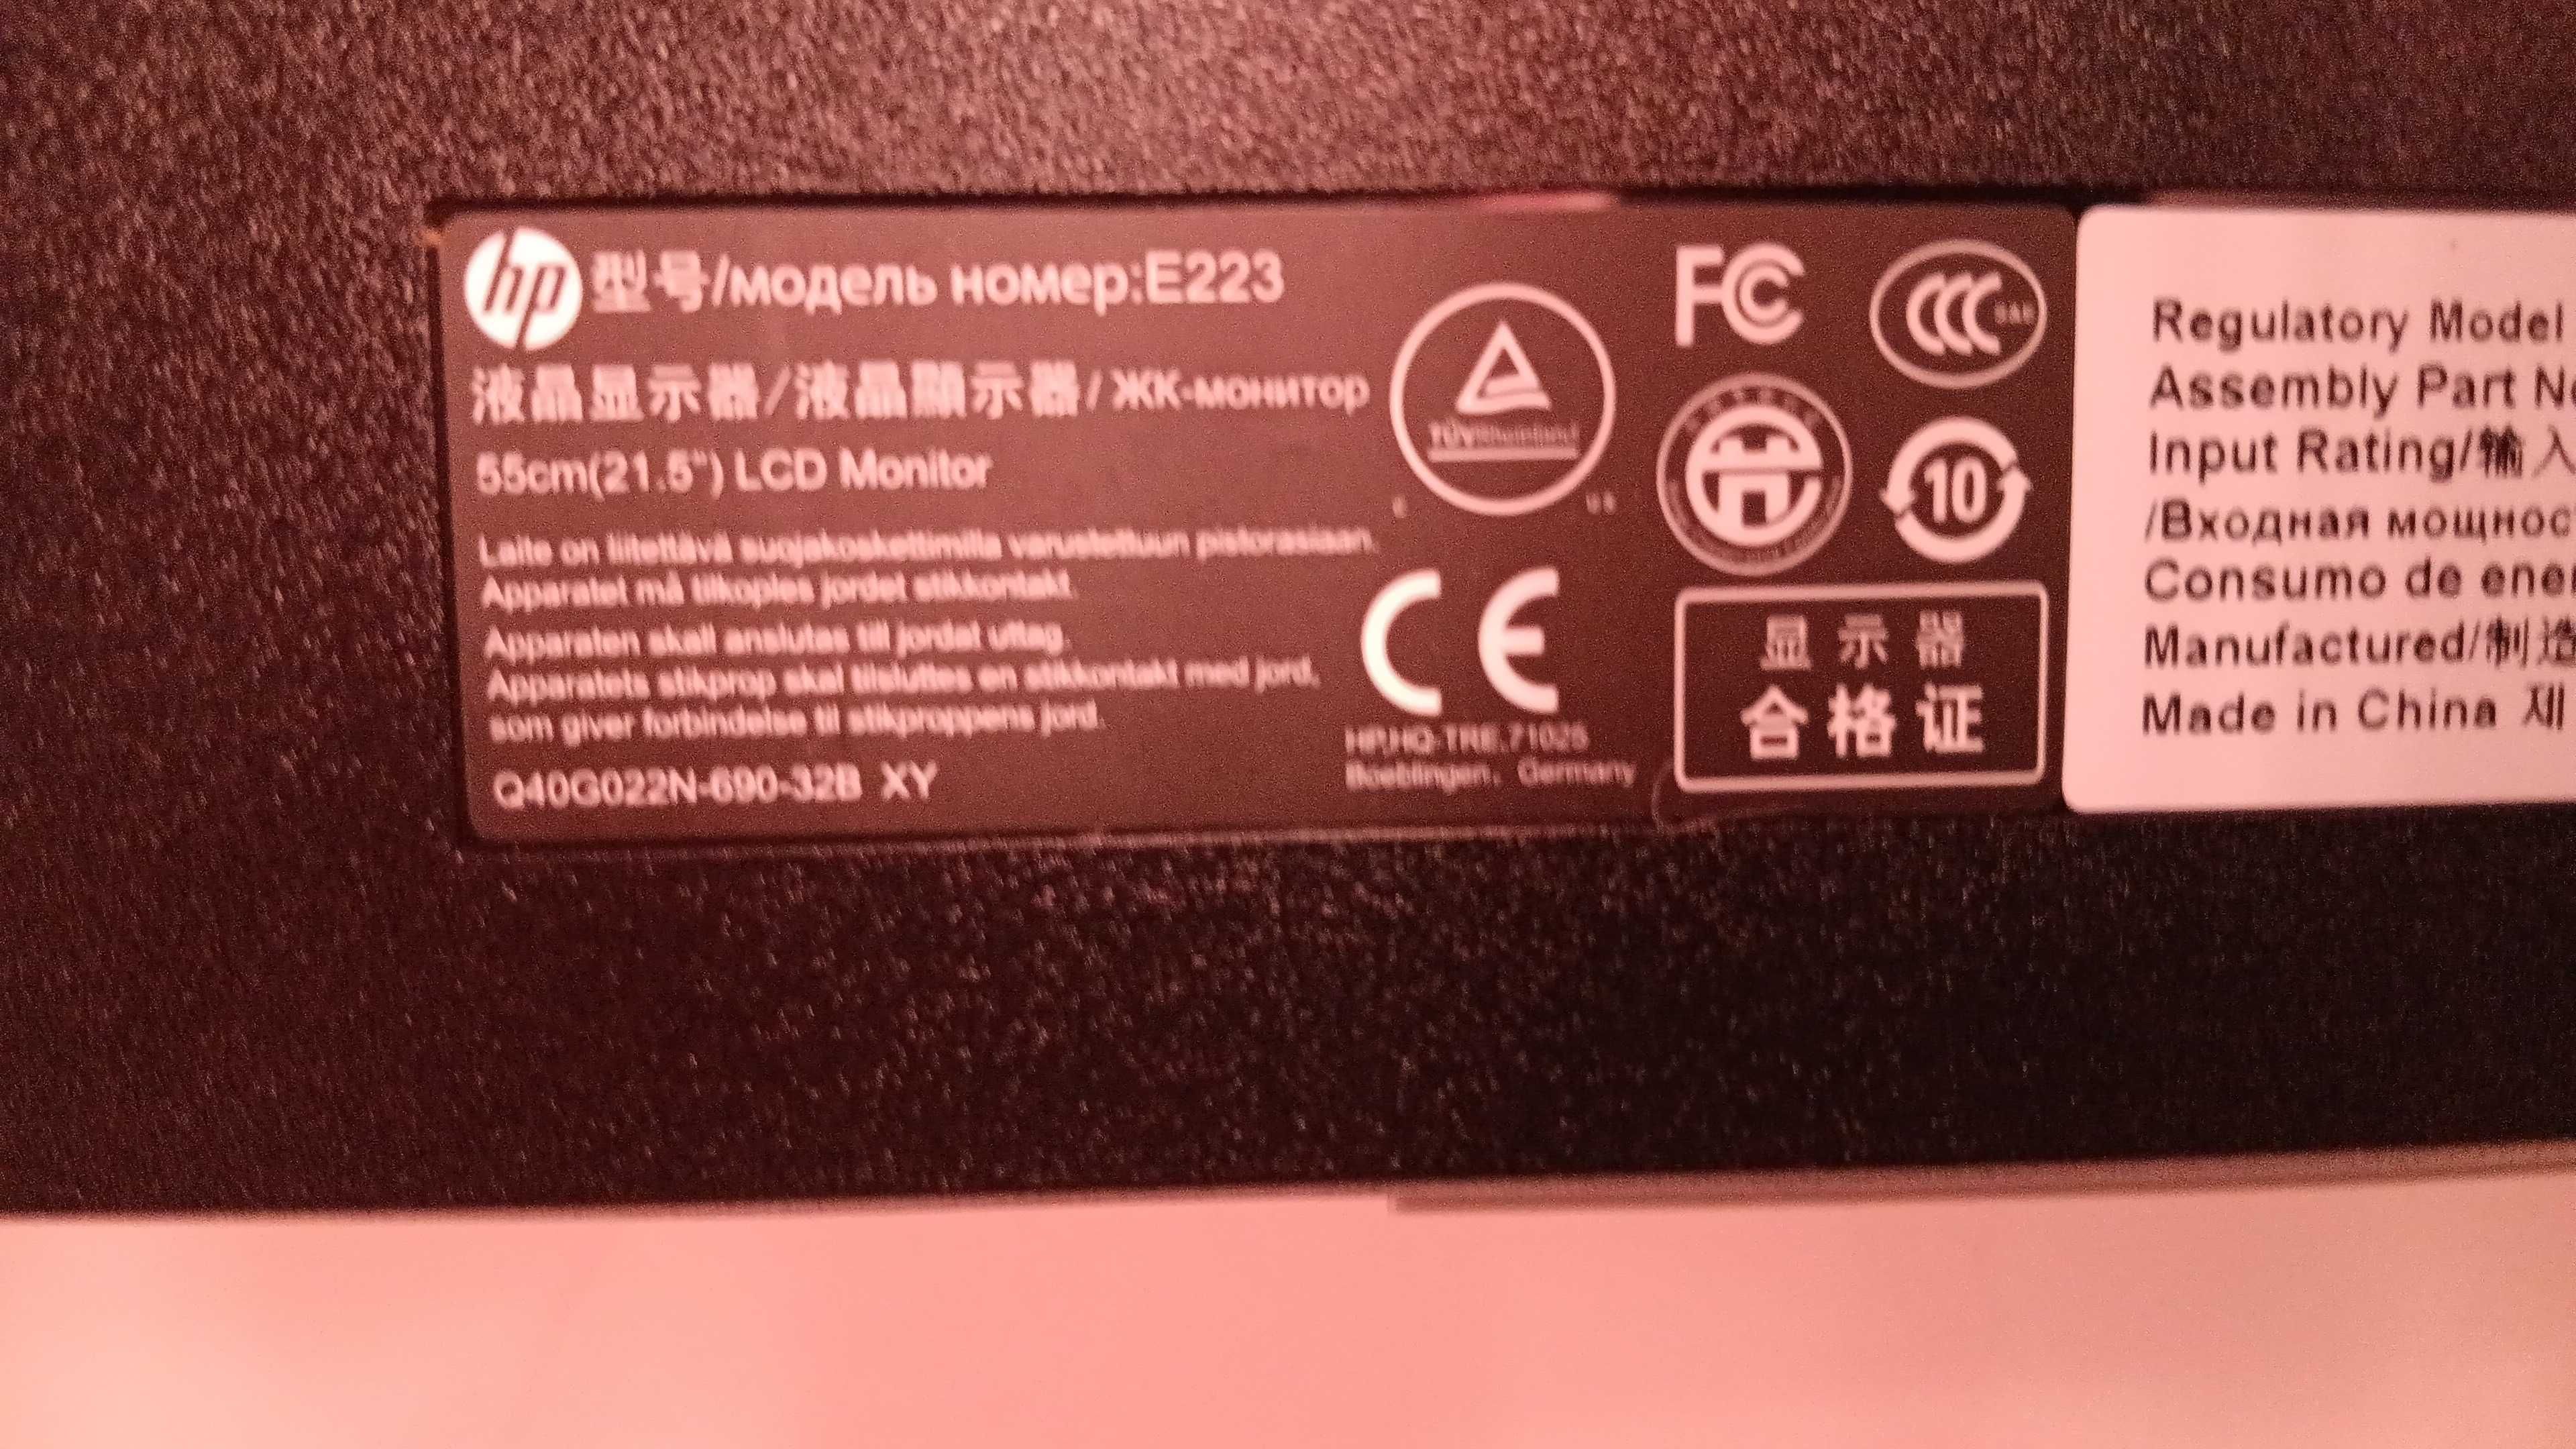 Monitor Hp E223 55cm